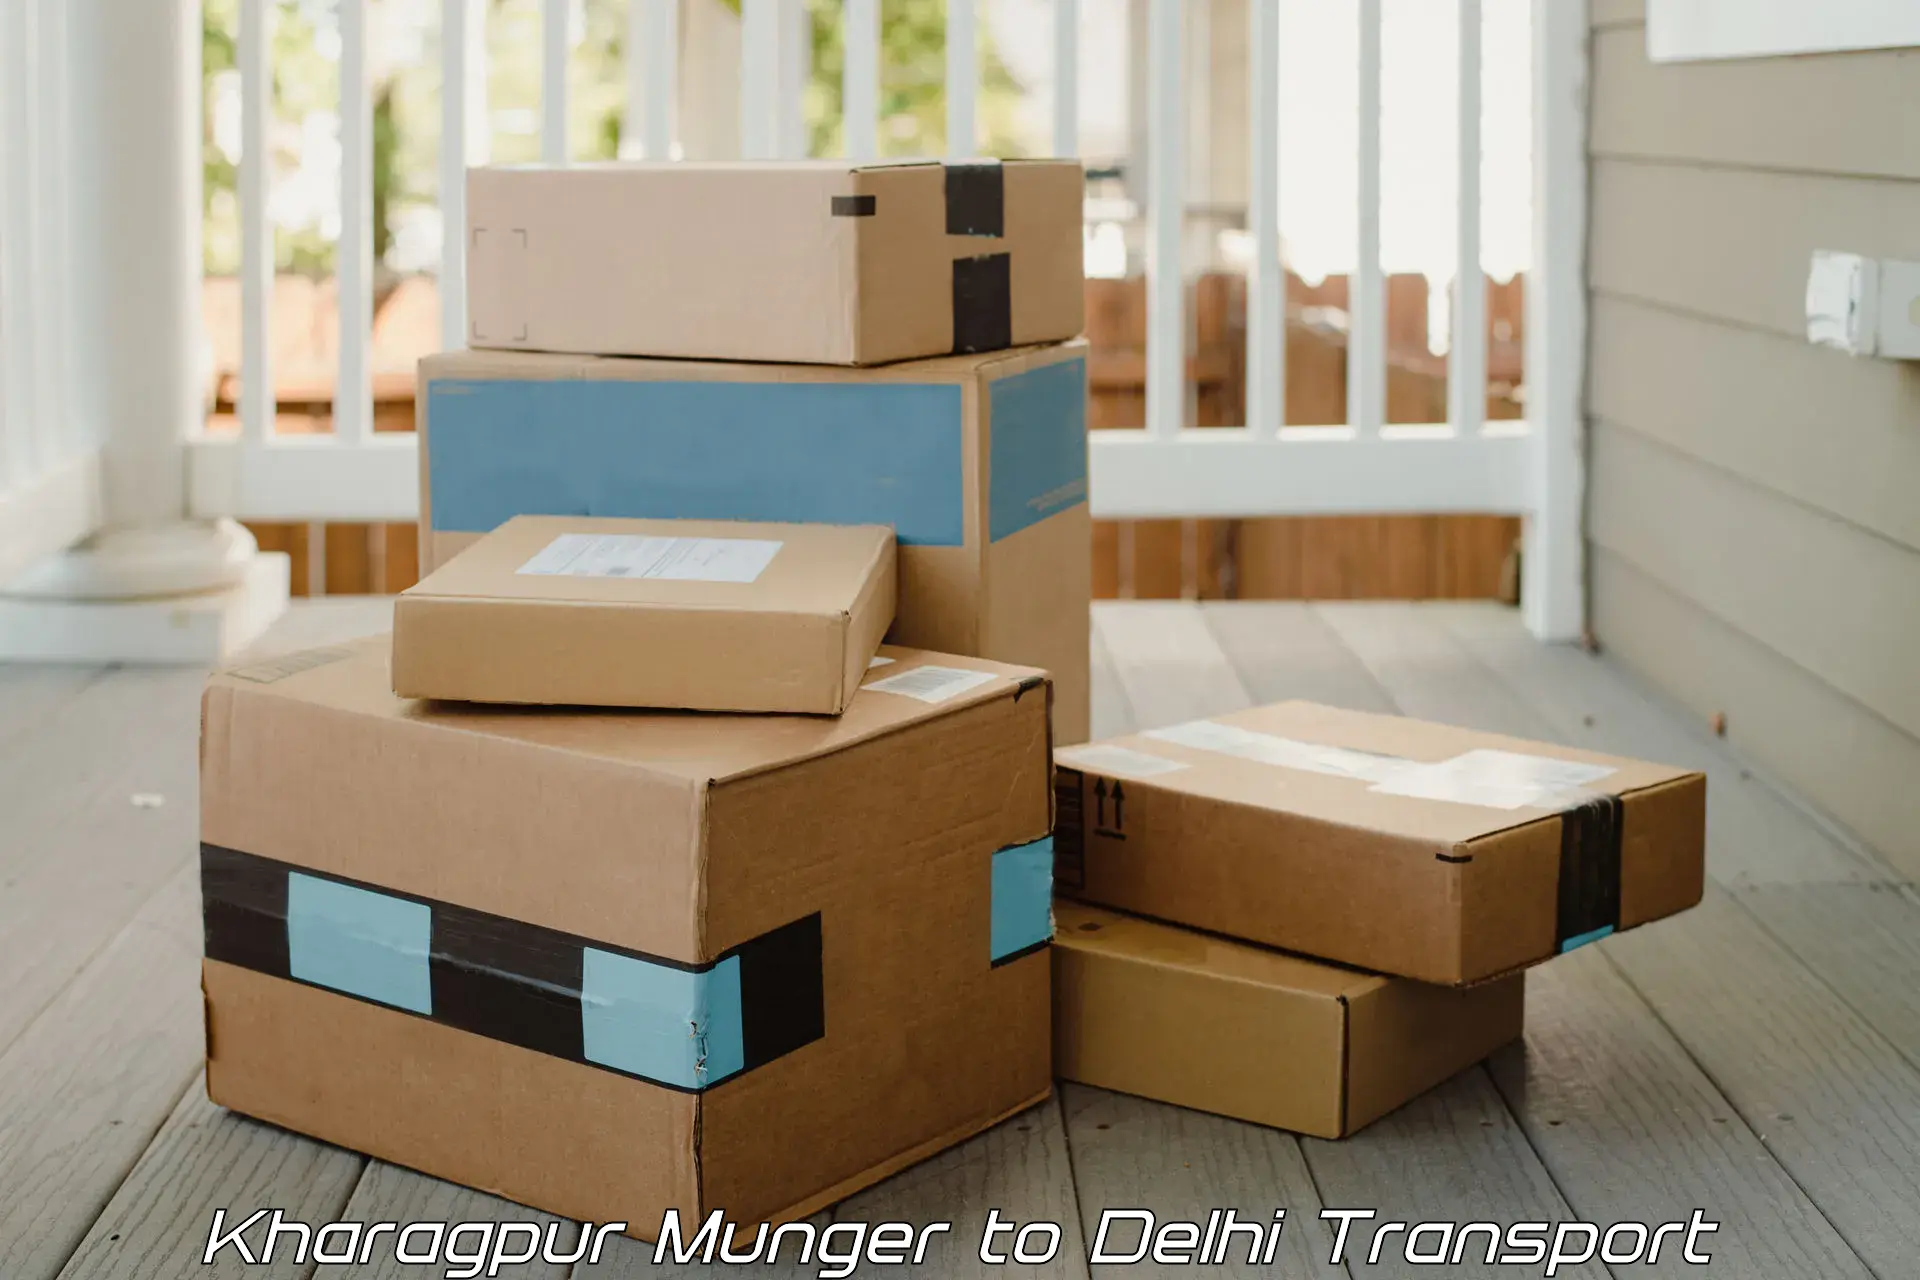 Furniture transport service Kharagpur Munger to Kalkaji